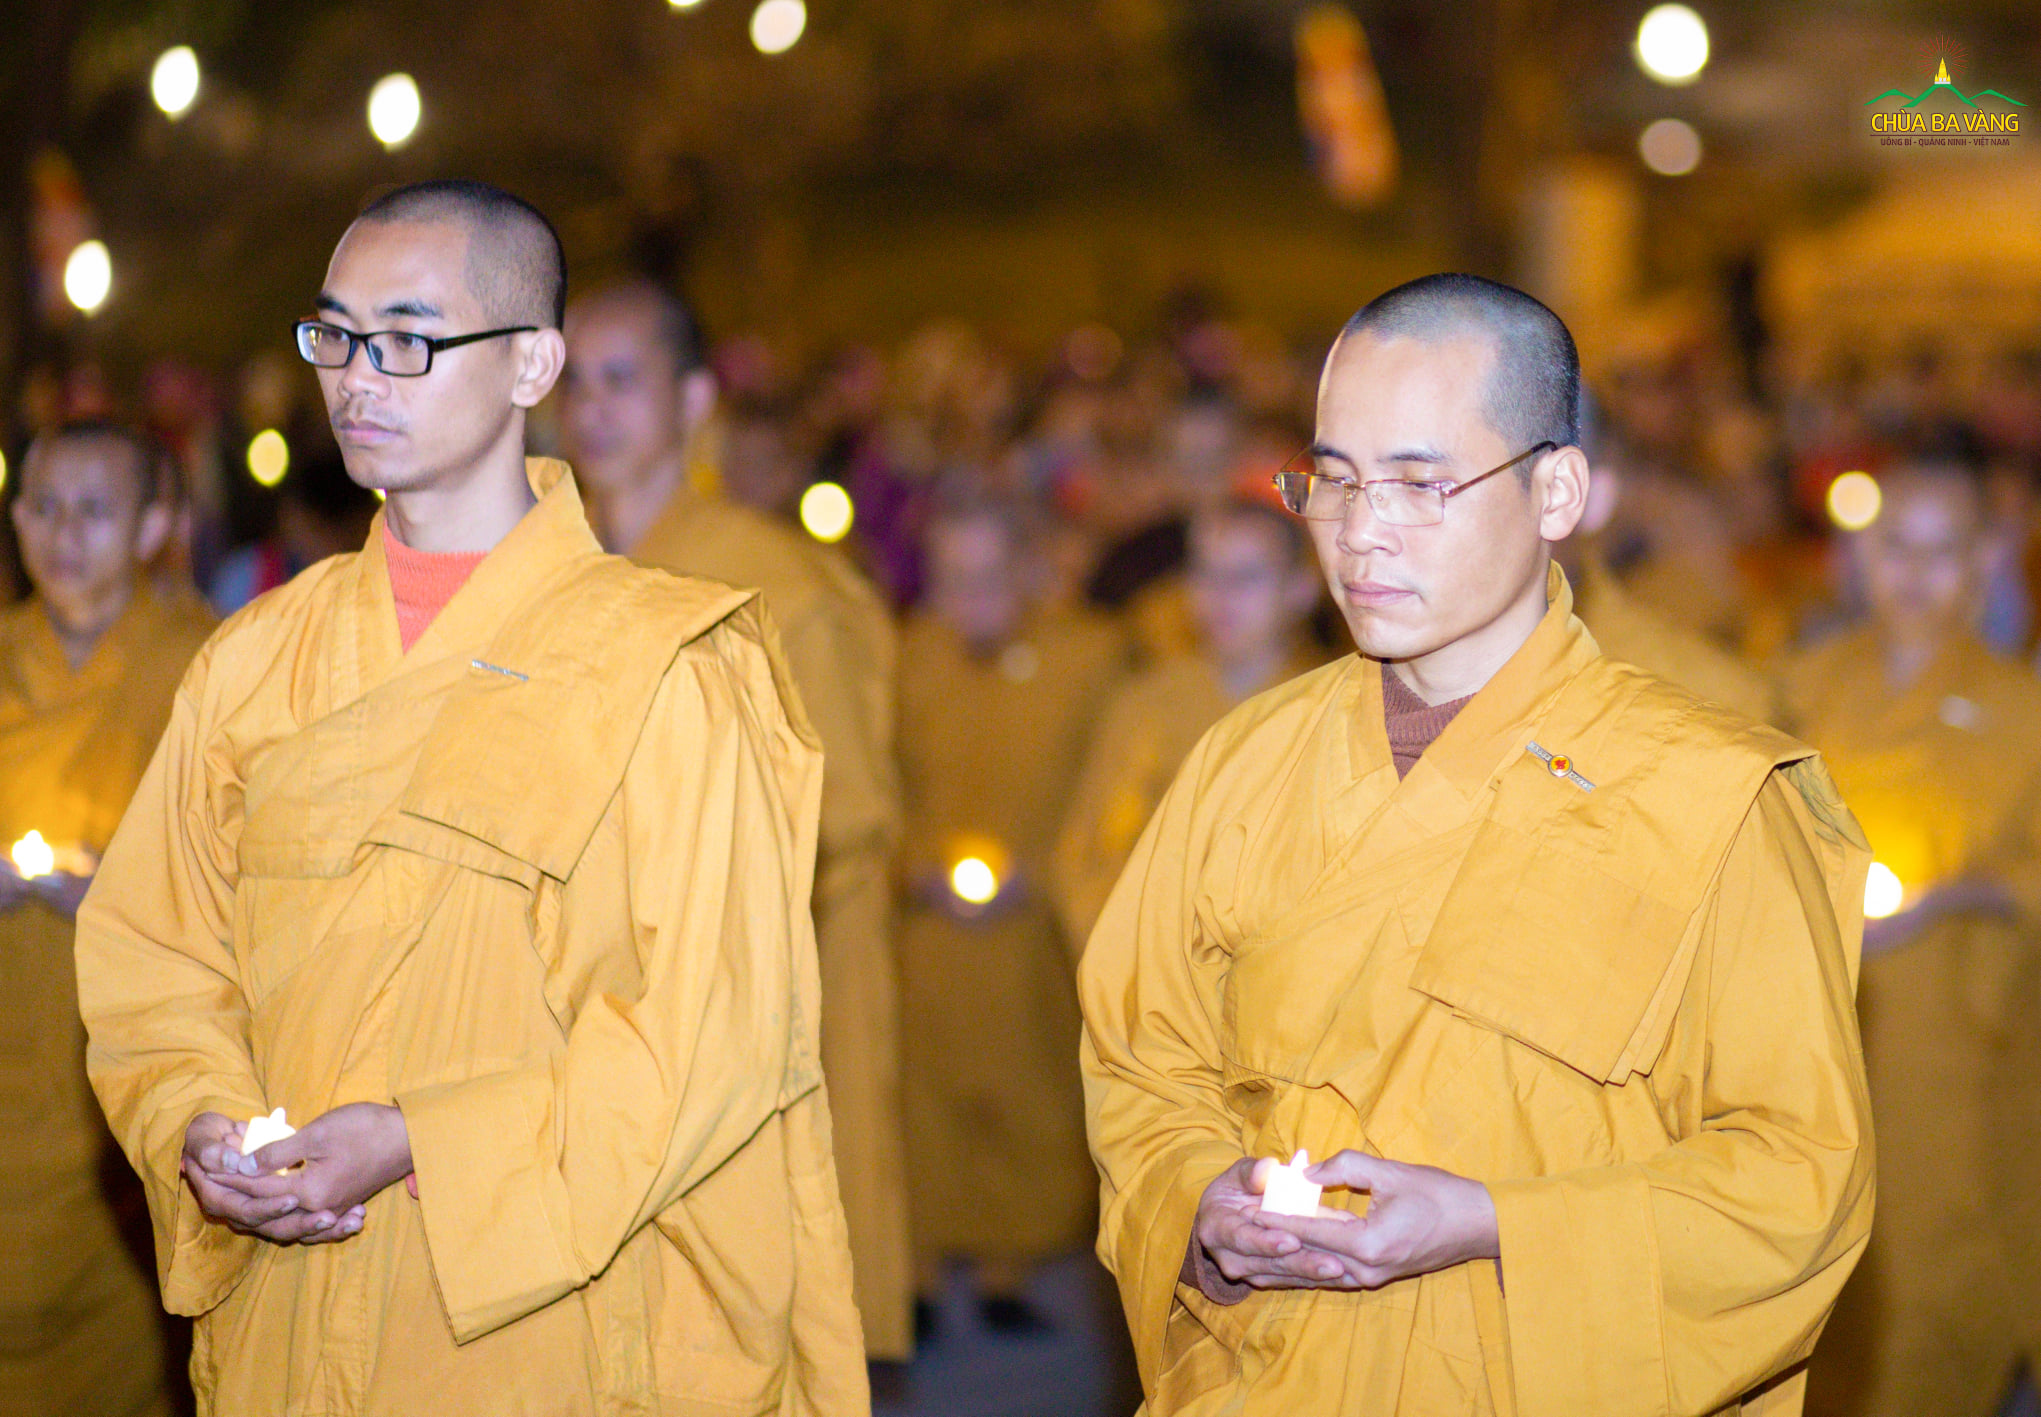 Ánh nến lung linh được nâng trên tay của chư Tăng và Phật tử để dâng lên cúng dường Đức Phật trong Đêm thiền mừng ngày Ngài thành Đạo